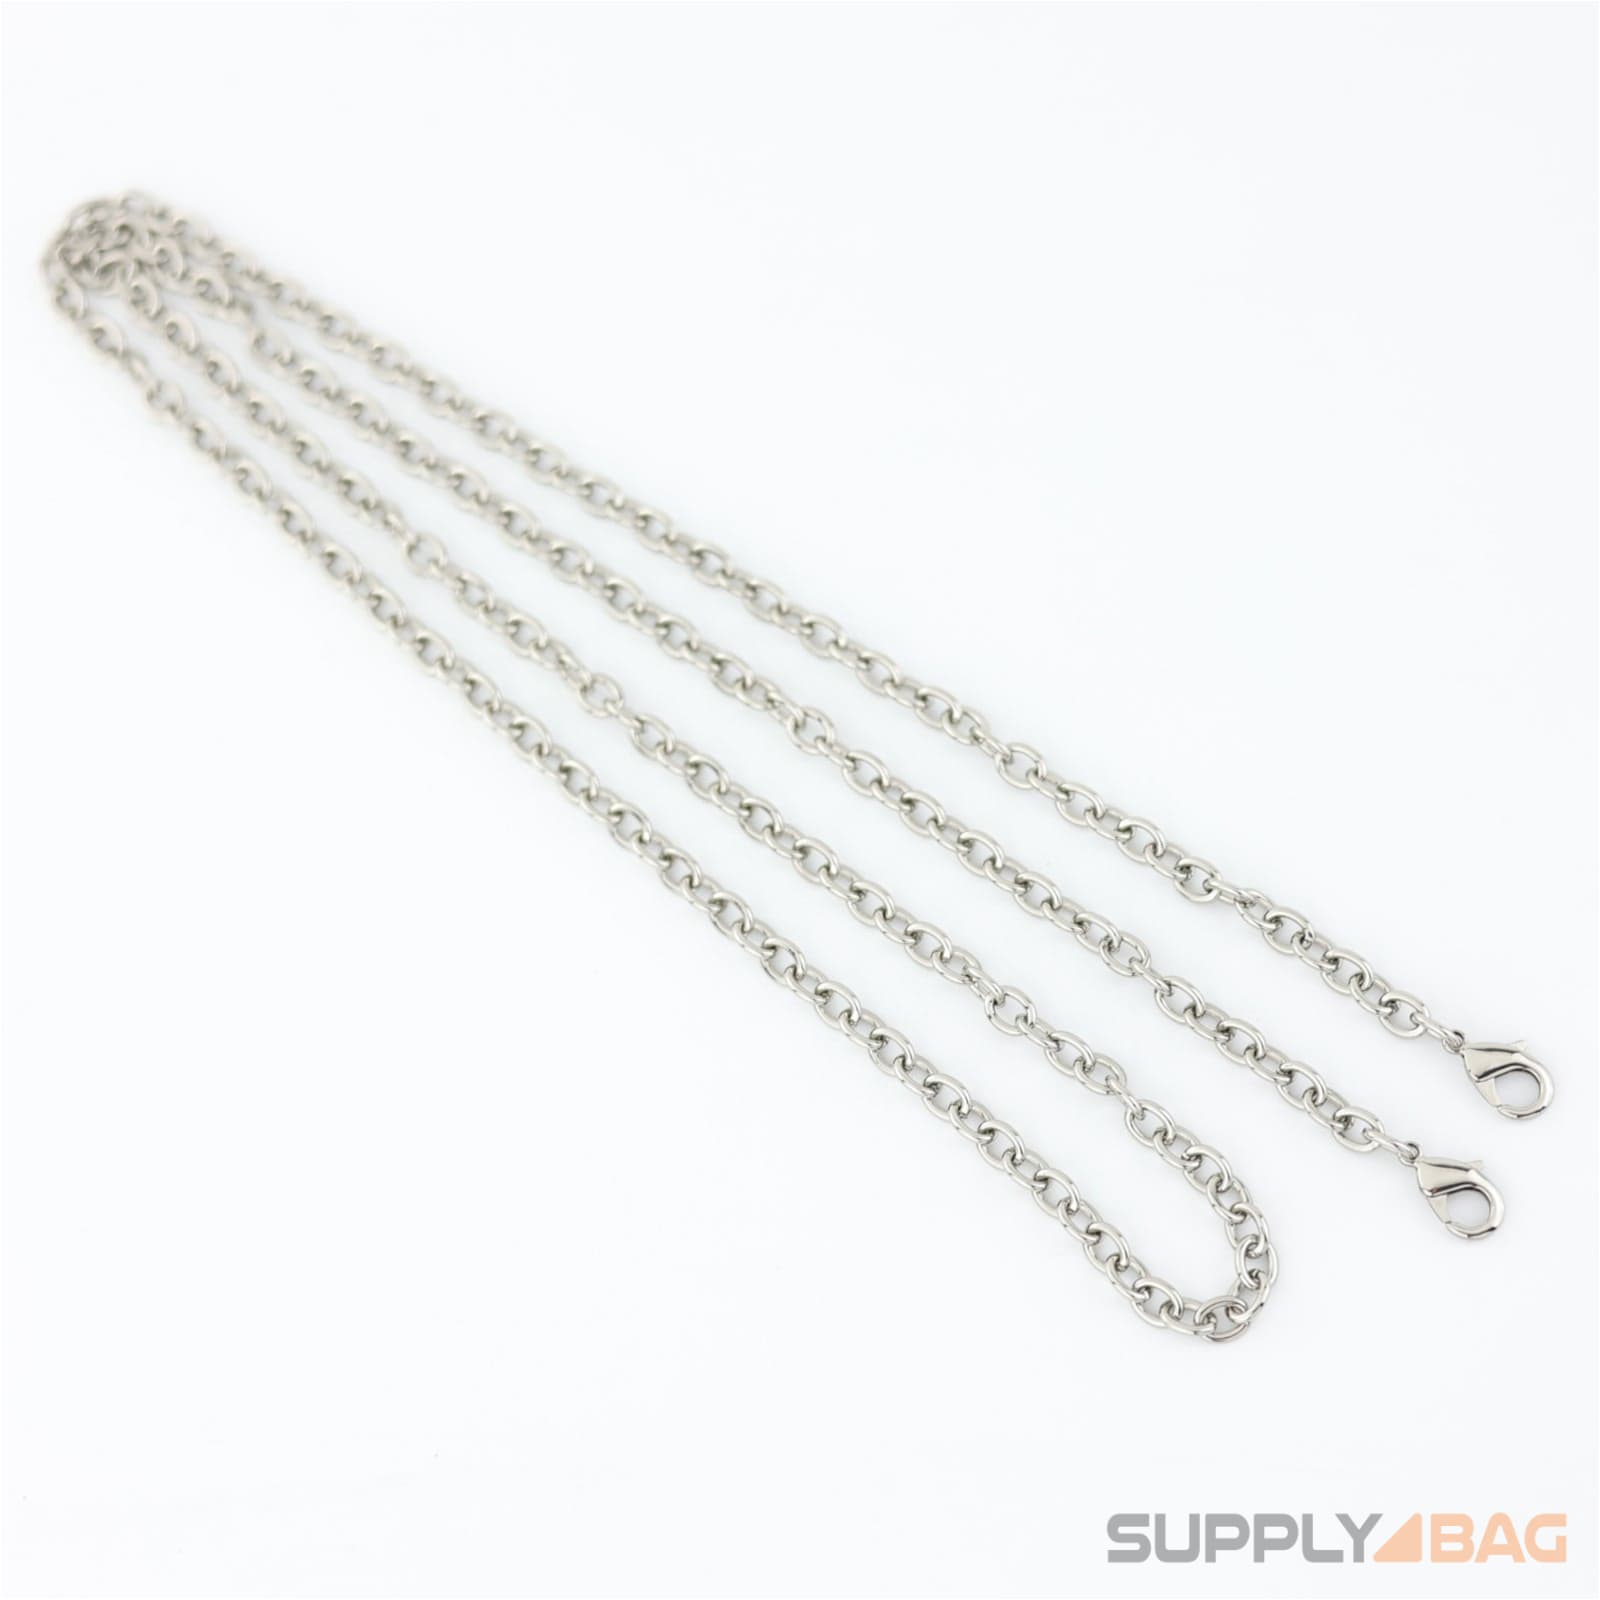 48 inch - silver small purse chain